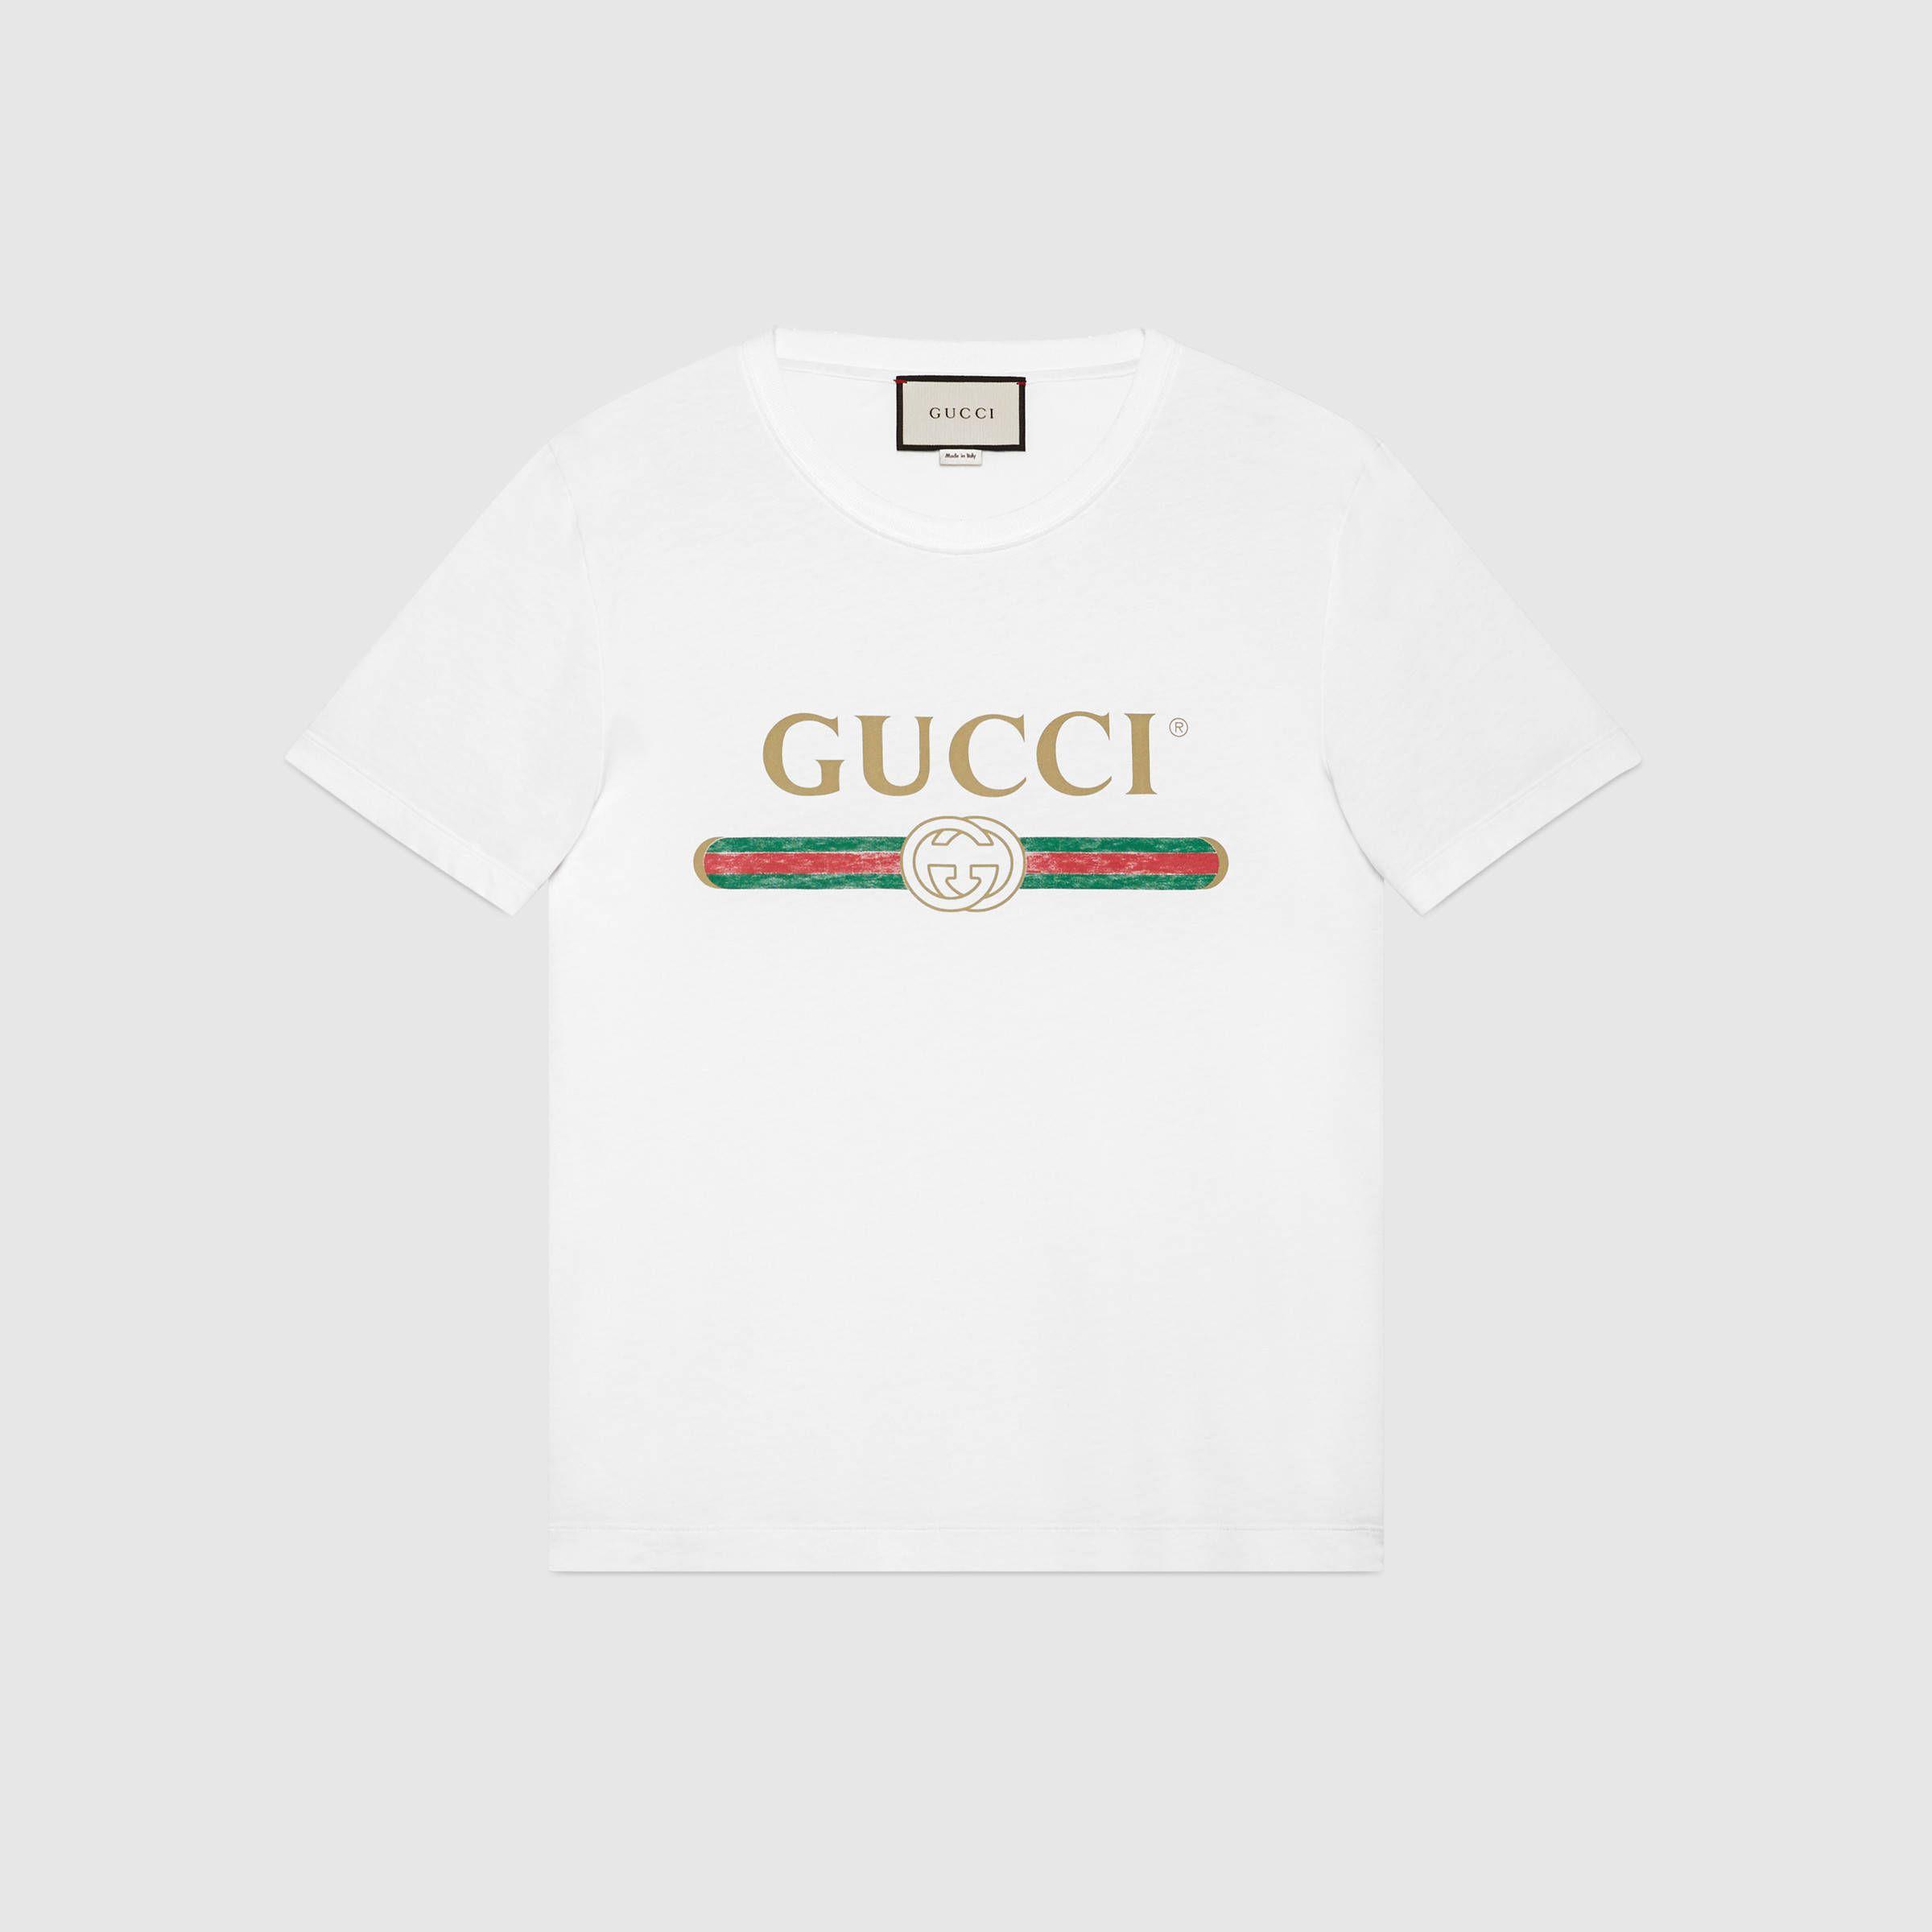 Gucci Washed T Shirt With Gucci Logo. Shirts, T